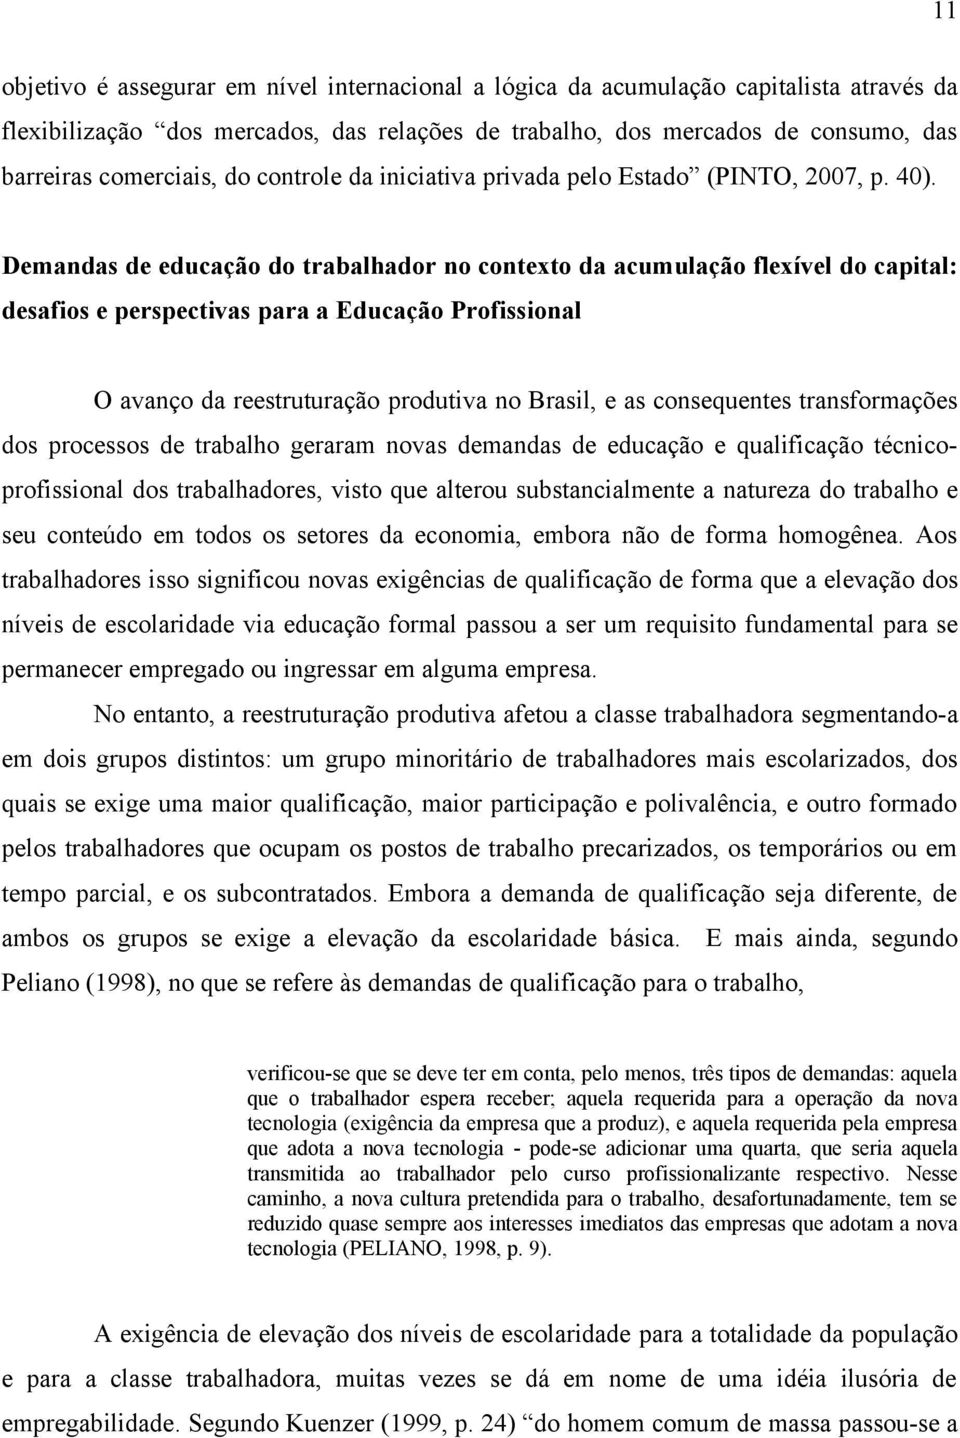 Demandas de educação do trabalhador no contexto da acumulação flexível do capital: desafios e perspectivas para a Educação Profissional O avanço da reestruturação produtiva no Brasil, e as